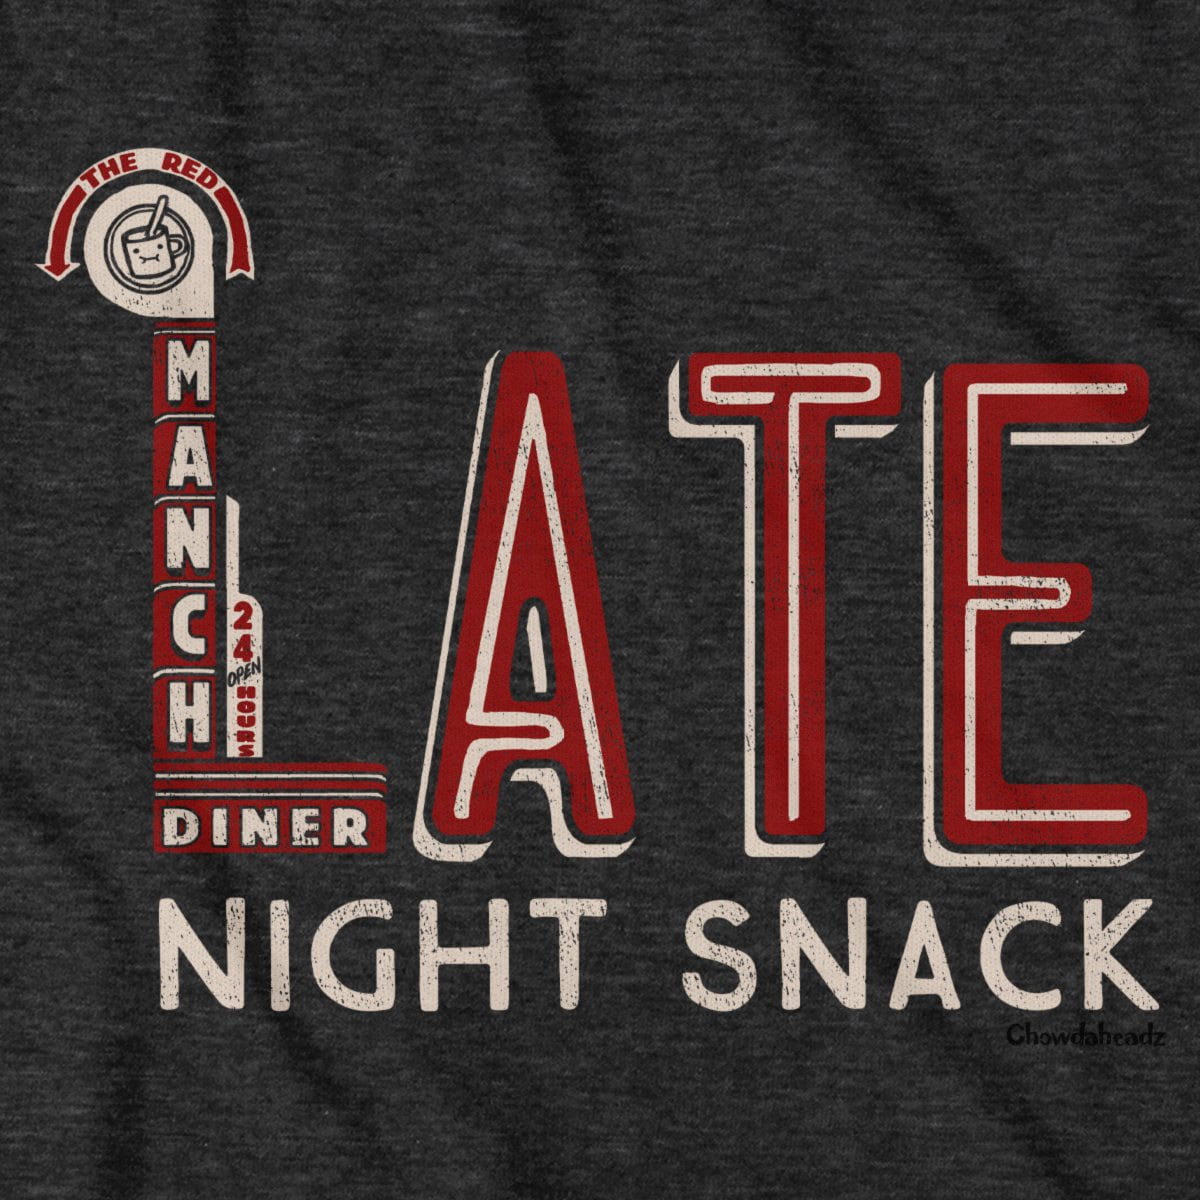 Late Night Snack T-Shirt - Chowdaheadz